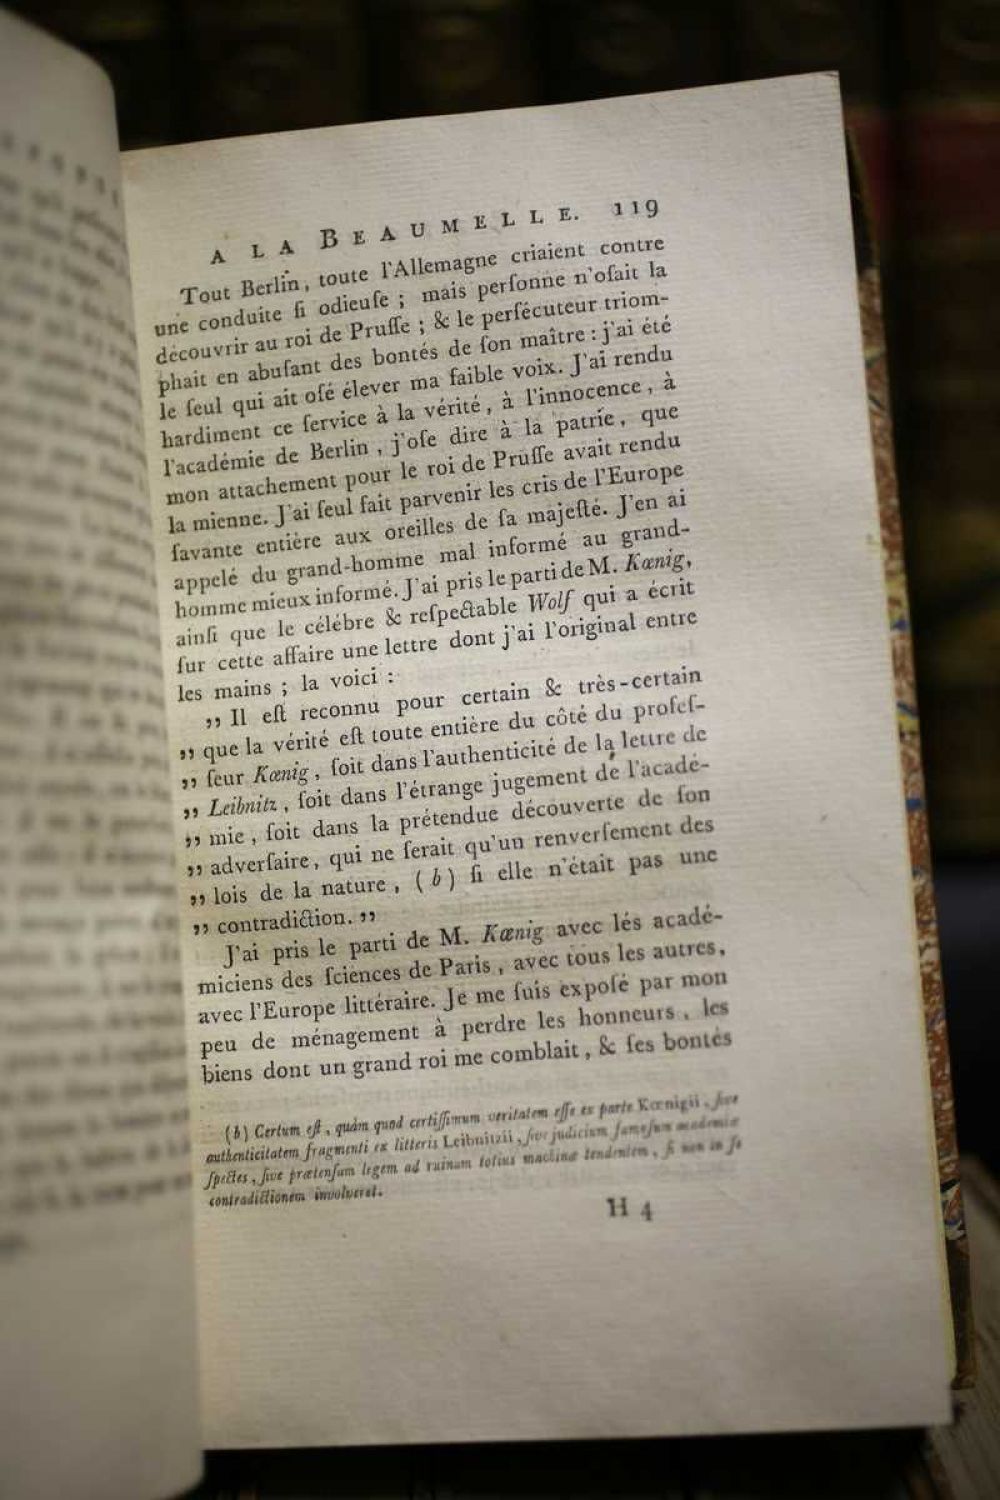 Œuvres de Voltaire Tome XIX: Siècle de Louis XIV.—Tome I by Voltaire